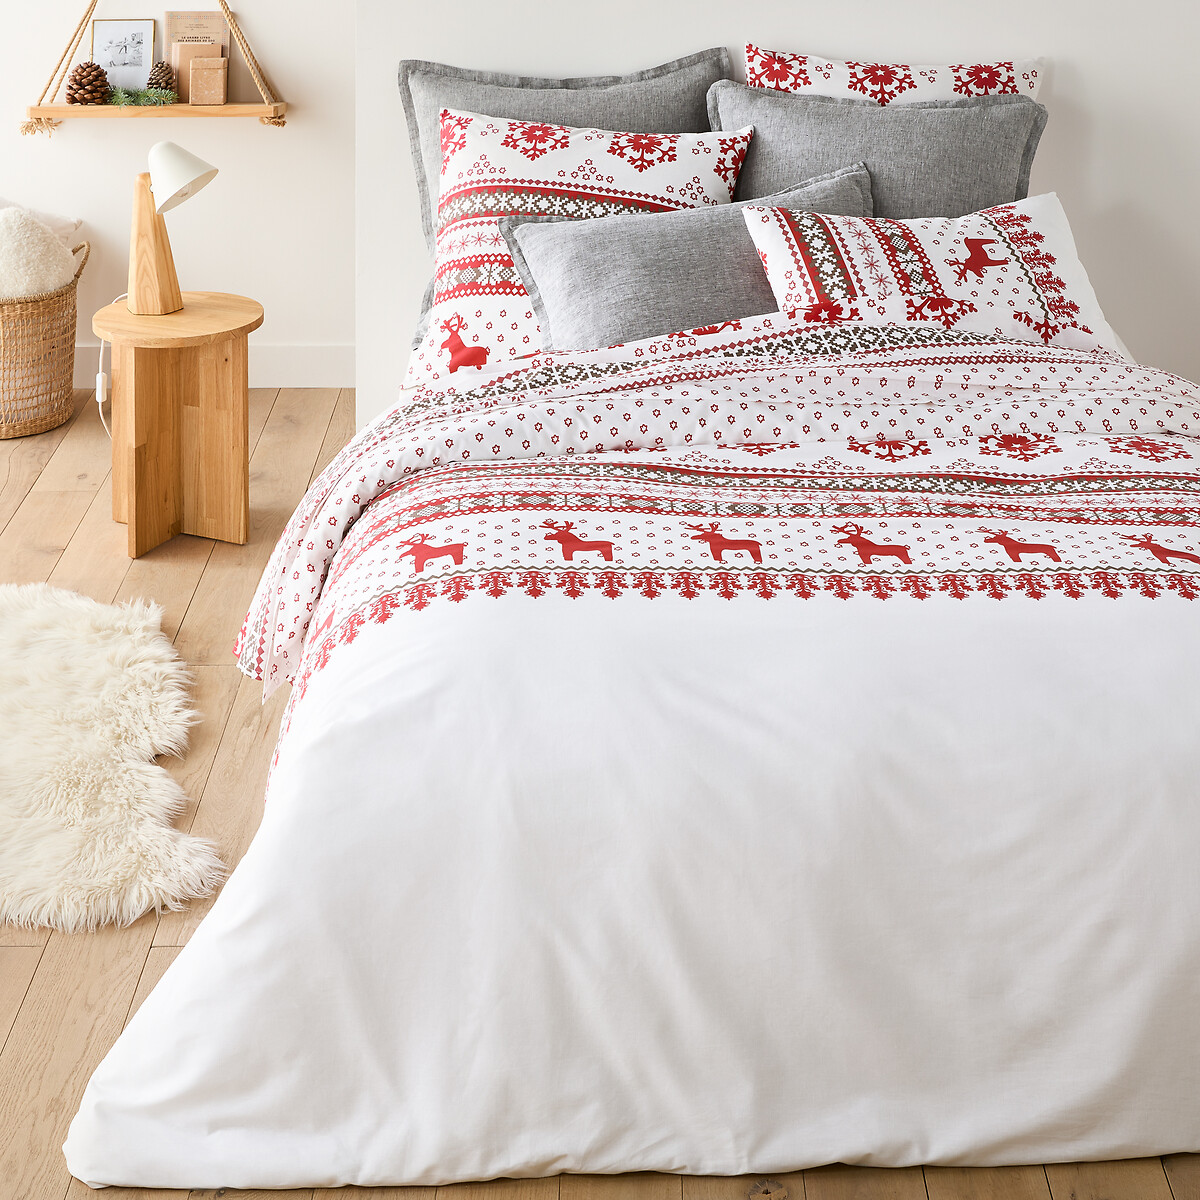 Dimensions Sleepdown Parure de lit réversible pour lit Double avec Housse de Couette à Pois Blancs et Gris en Coton Super Doux 2 taies d'oreiller Assorties. 200 x 200 cm 